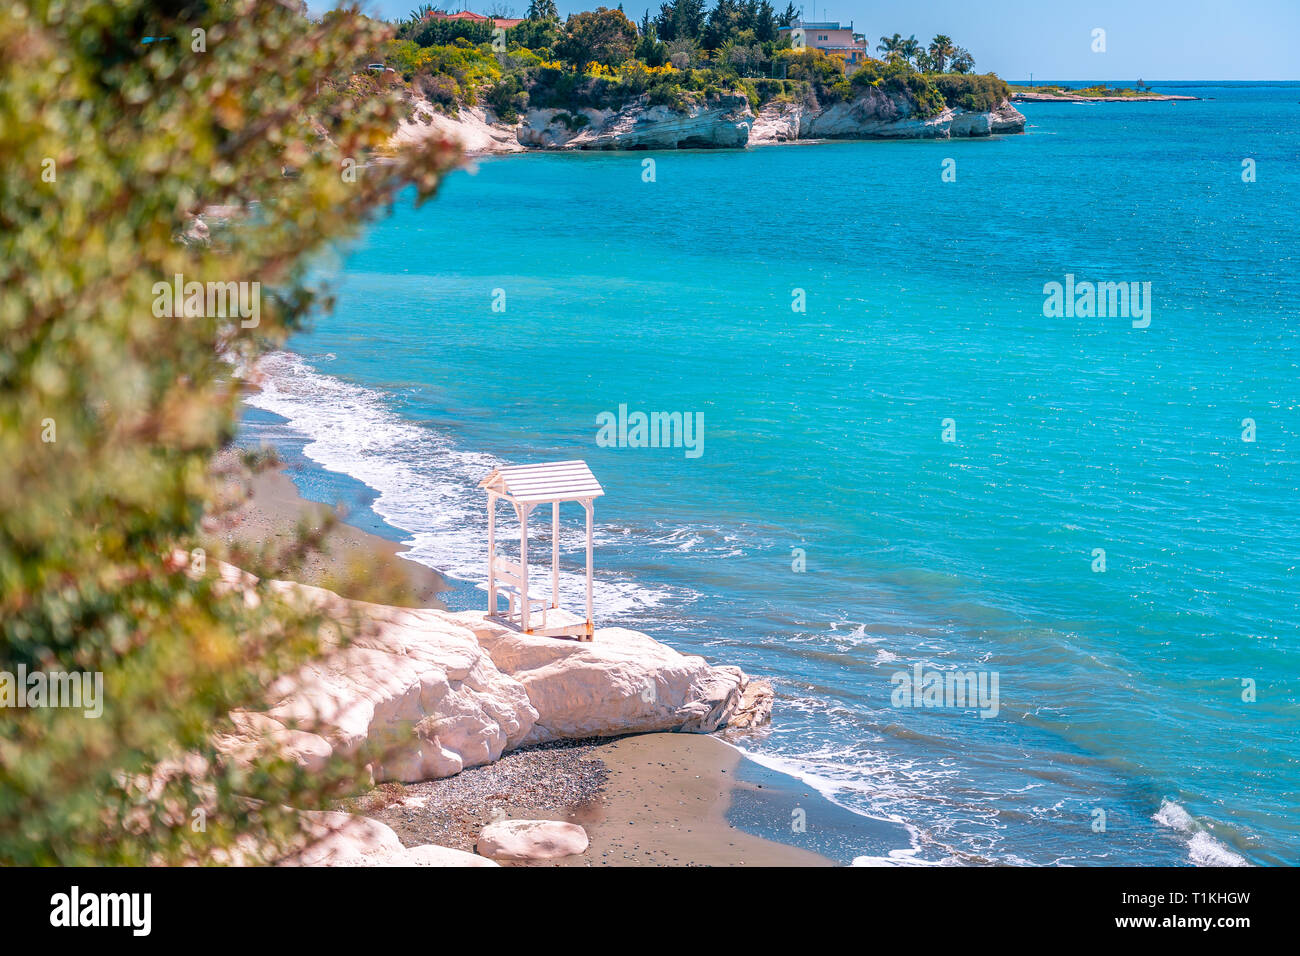 Schönen Sommer Blick auf die weißen Klippen und türkisblauem Wasser Meer at Governor's Beach in der Nähe von Limassol, Zypern. Stockfoto